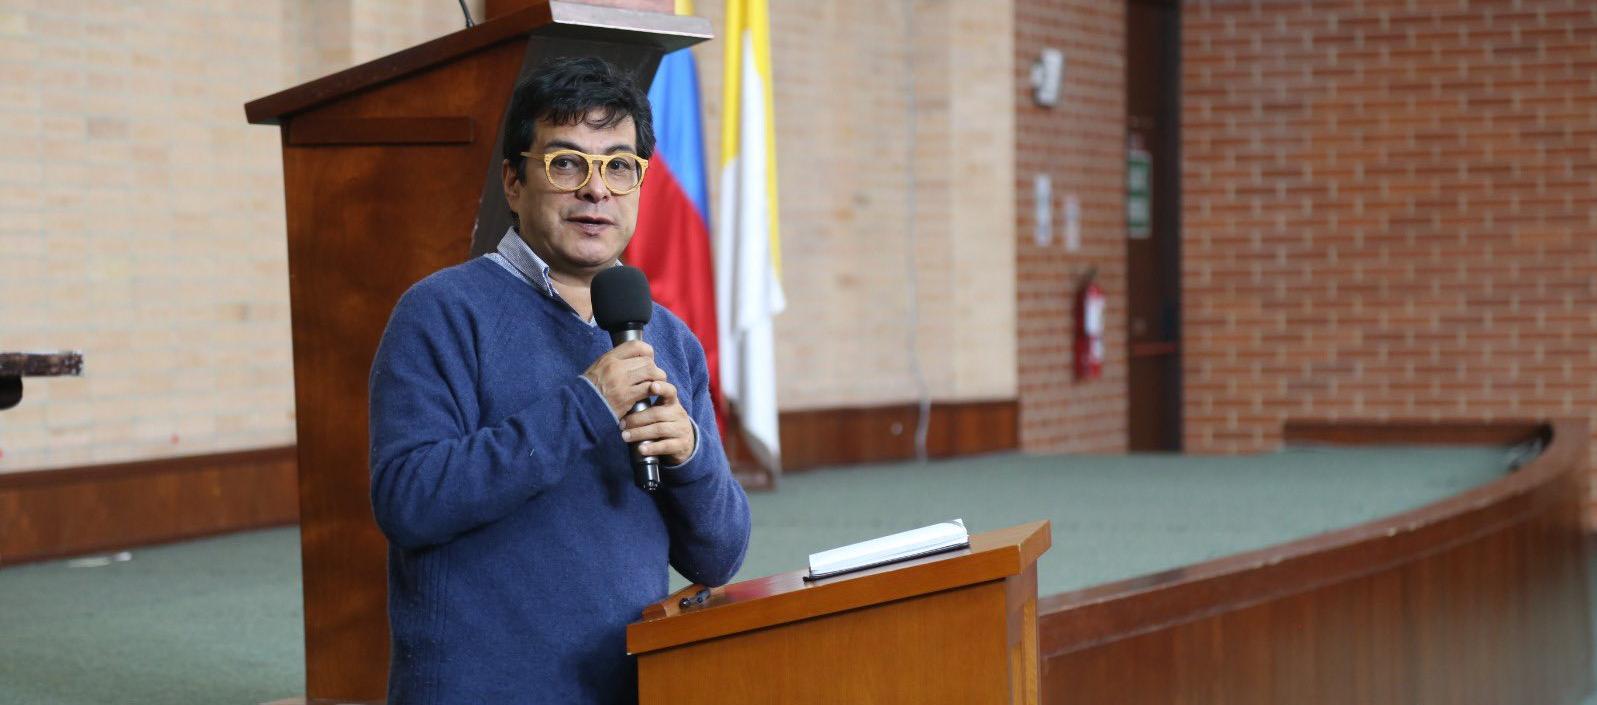 Danilo Rueda, Alto comisionado para la paz